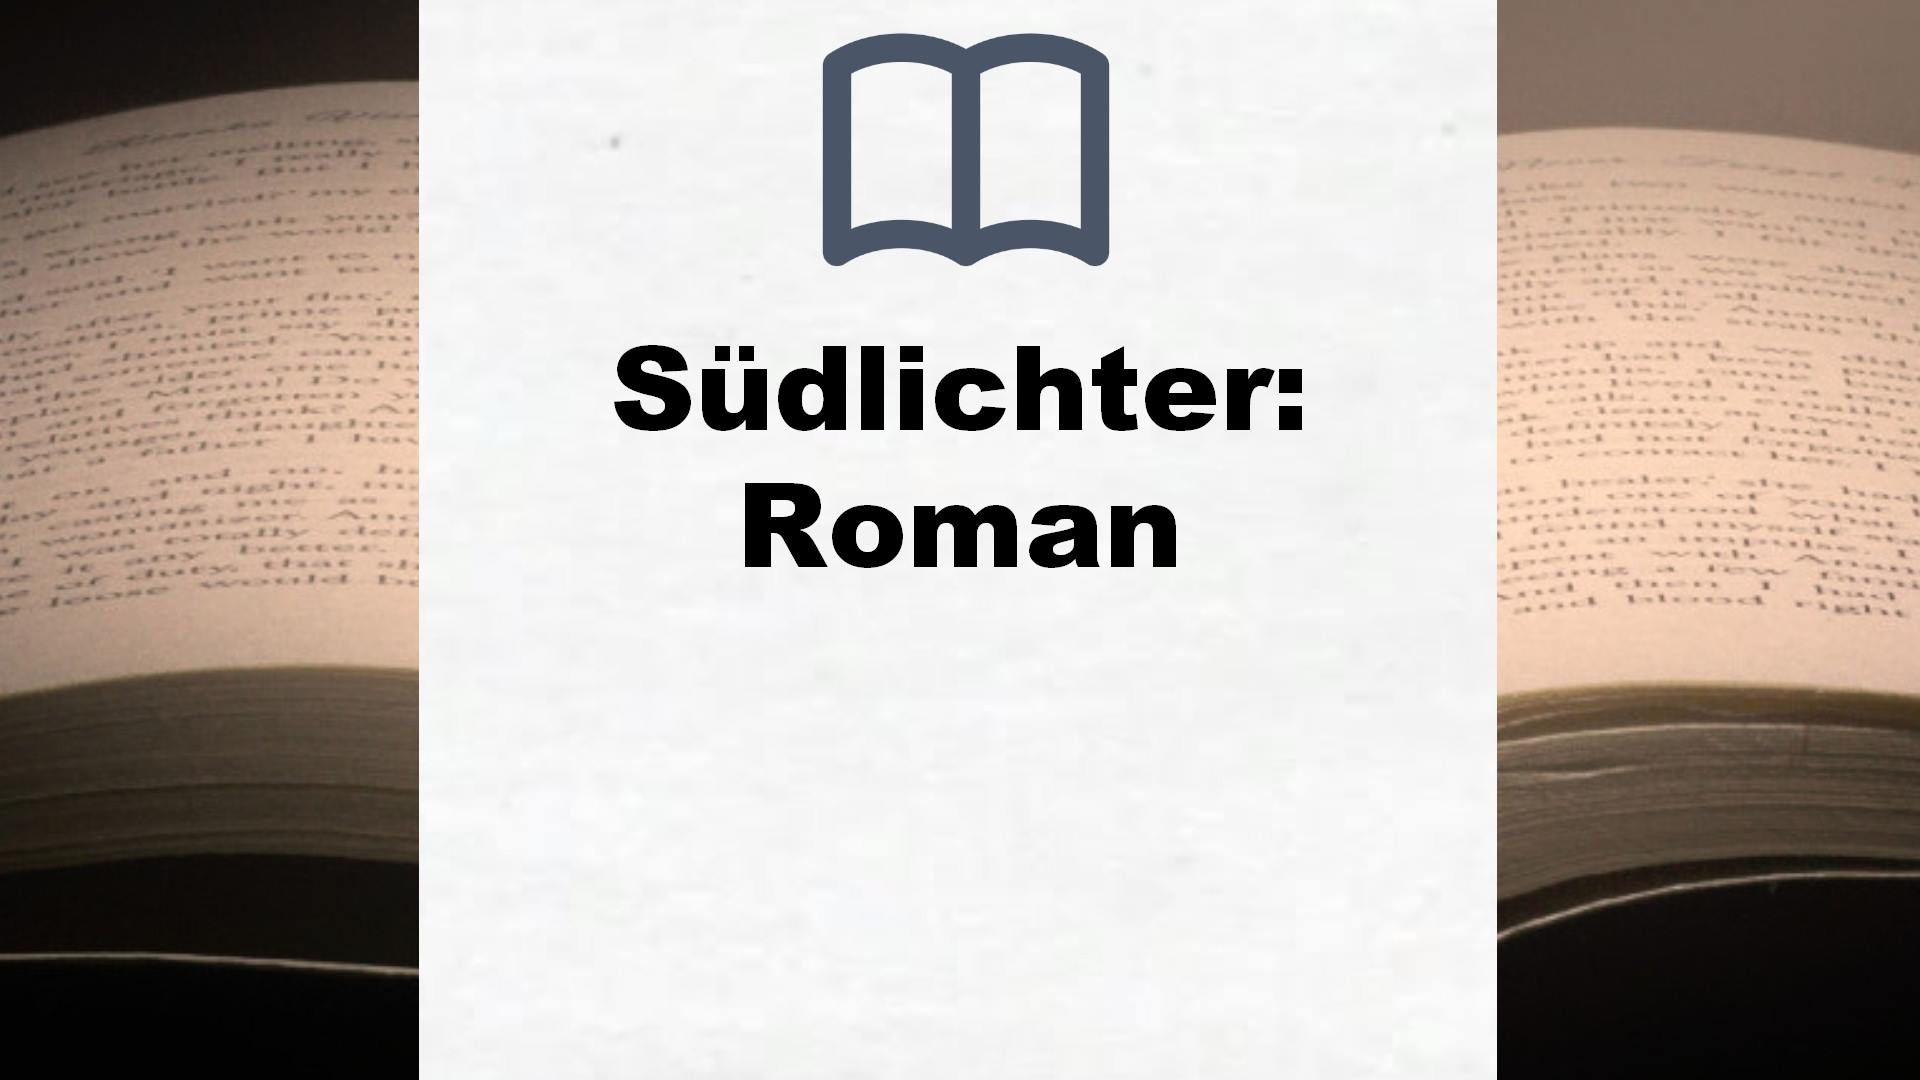 Südlichter: Roman – Buchrezension